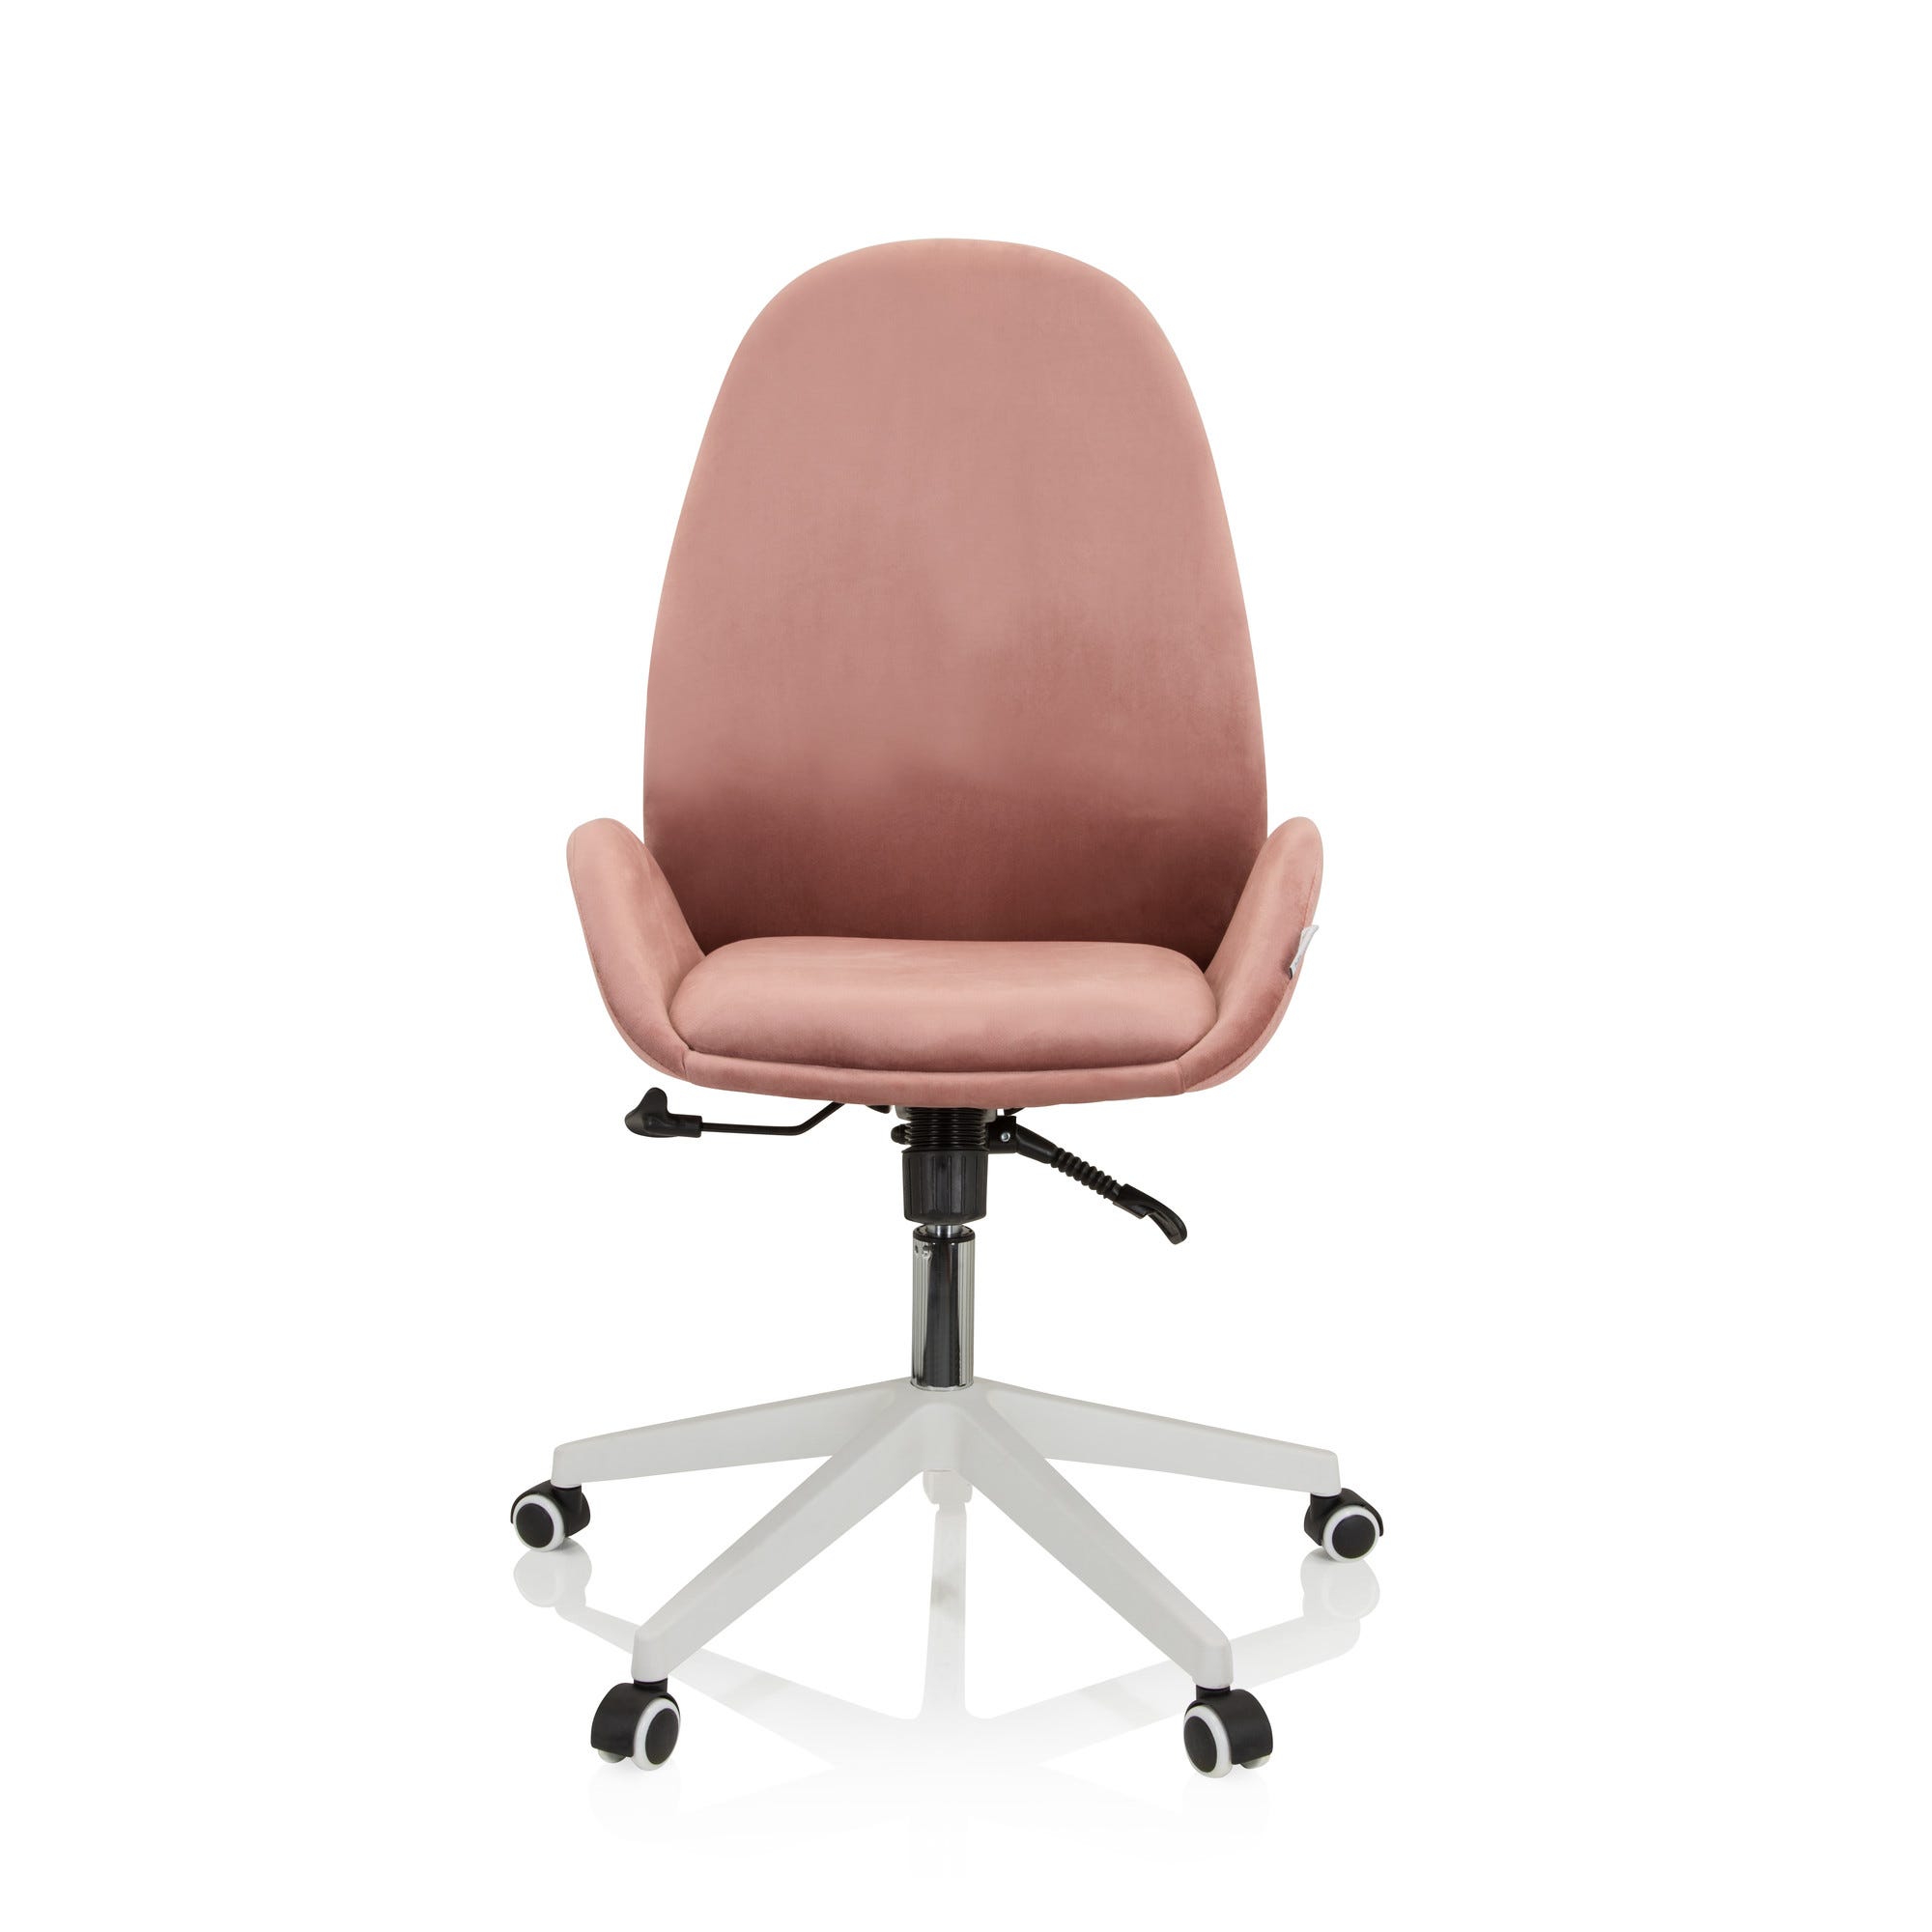 Sedia da ufficio / sedia girevole AVEA velluto rosa hjh OFFICE